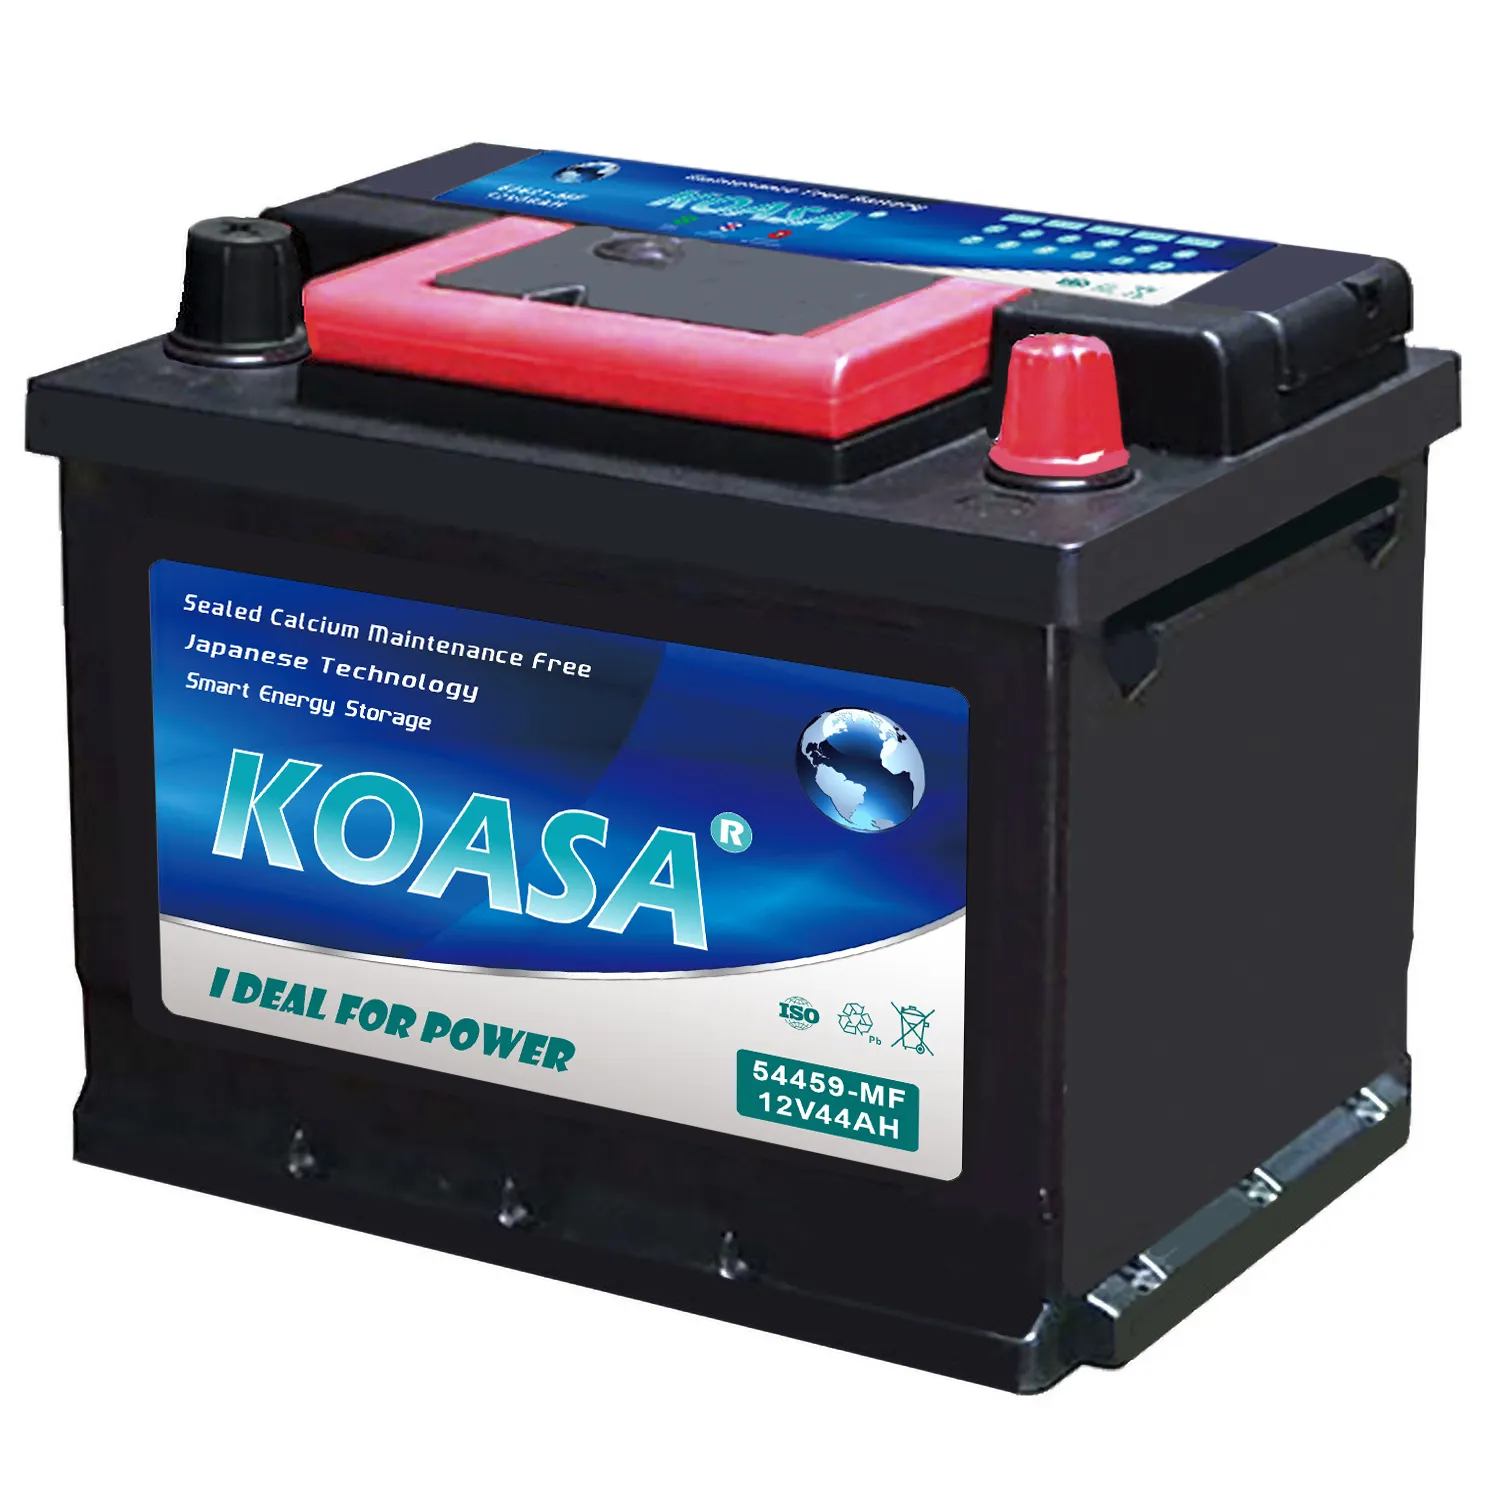 KOASA नई मिनी 54459-MF जल्दी शुरू रखरखाव नि: शुल्क ऑटो बैटरी 12V 44AH एमएफ वाहन कार बैटरी